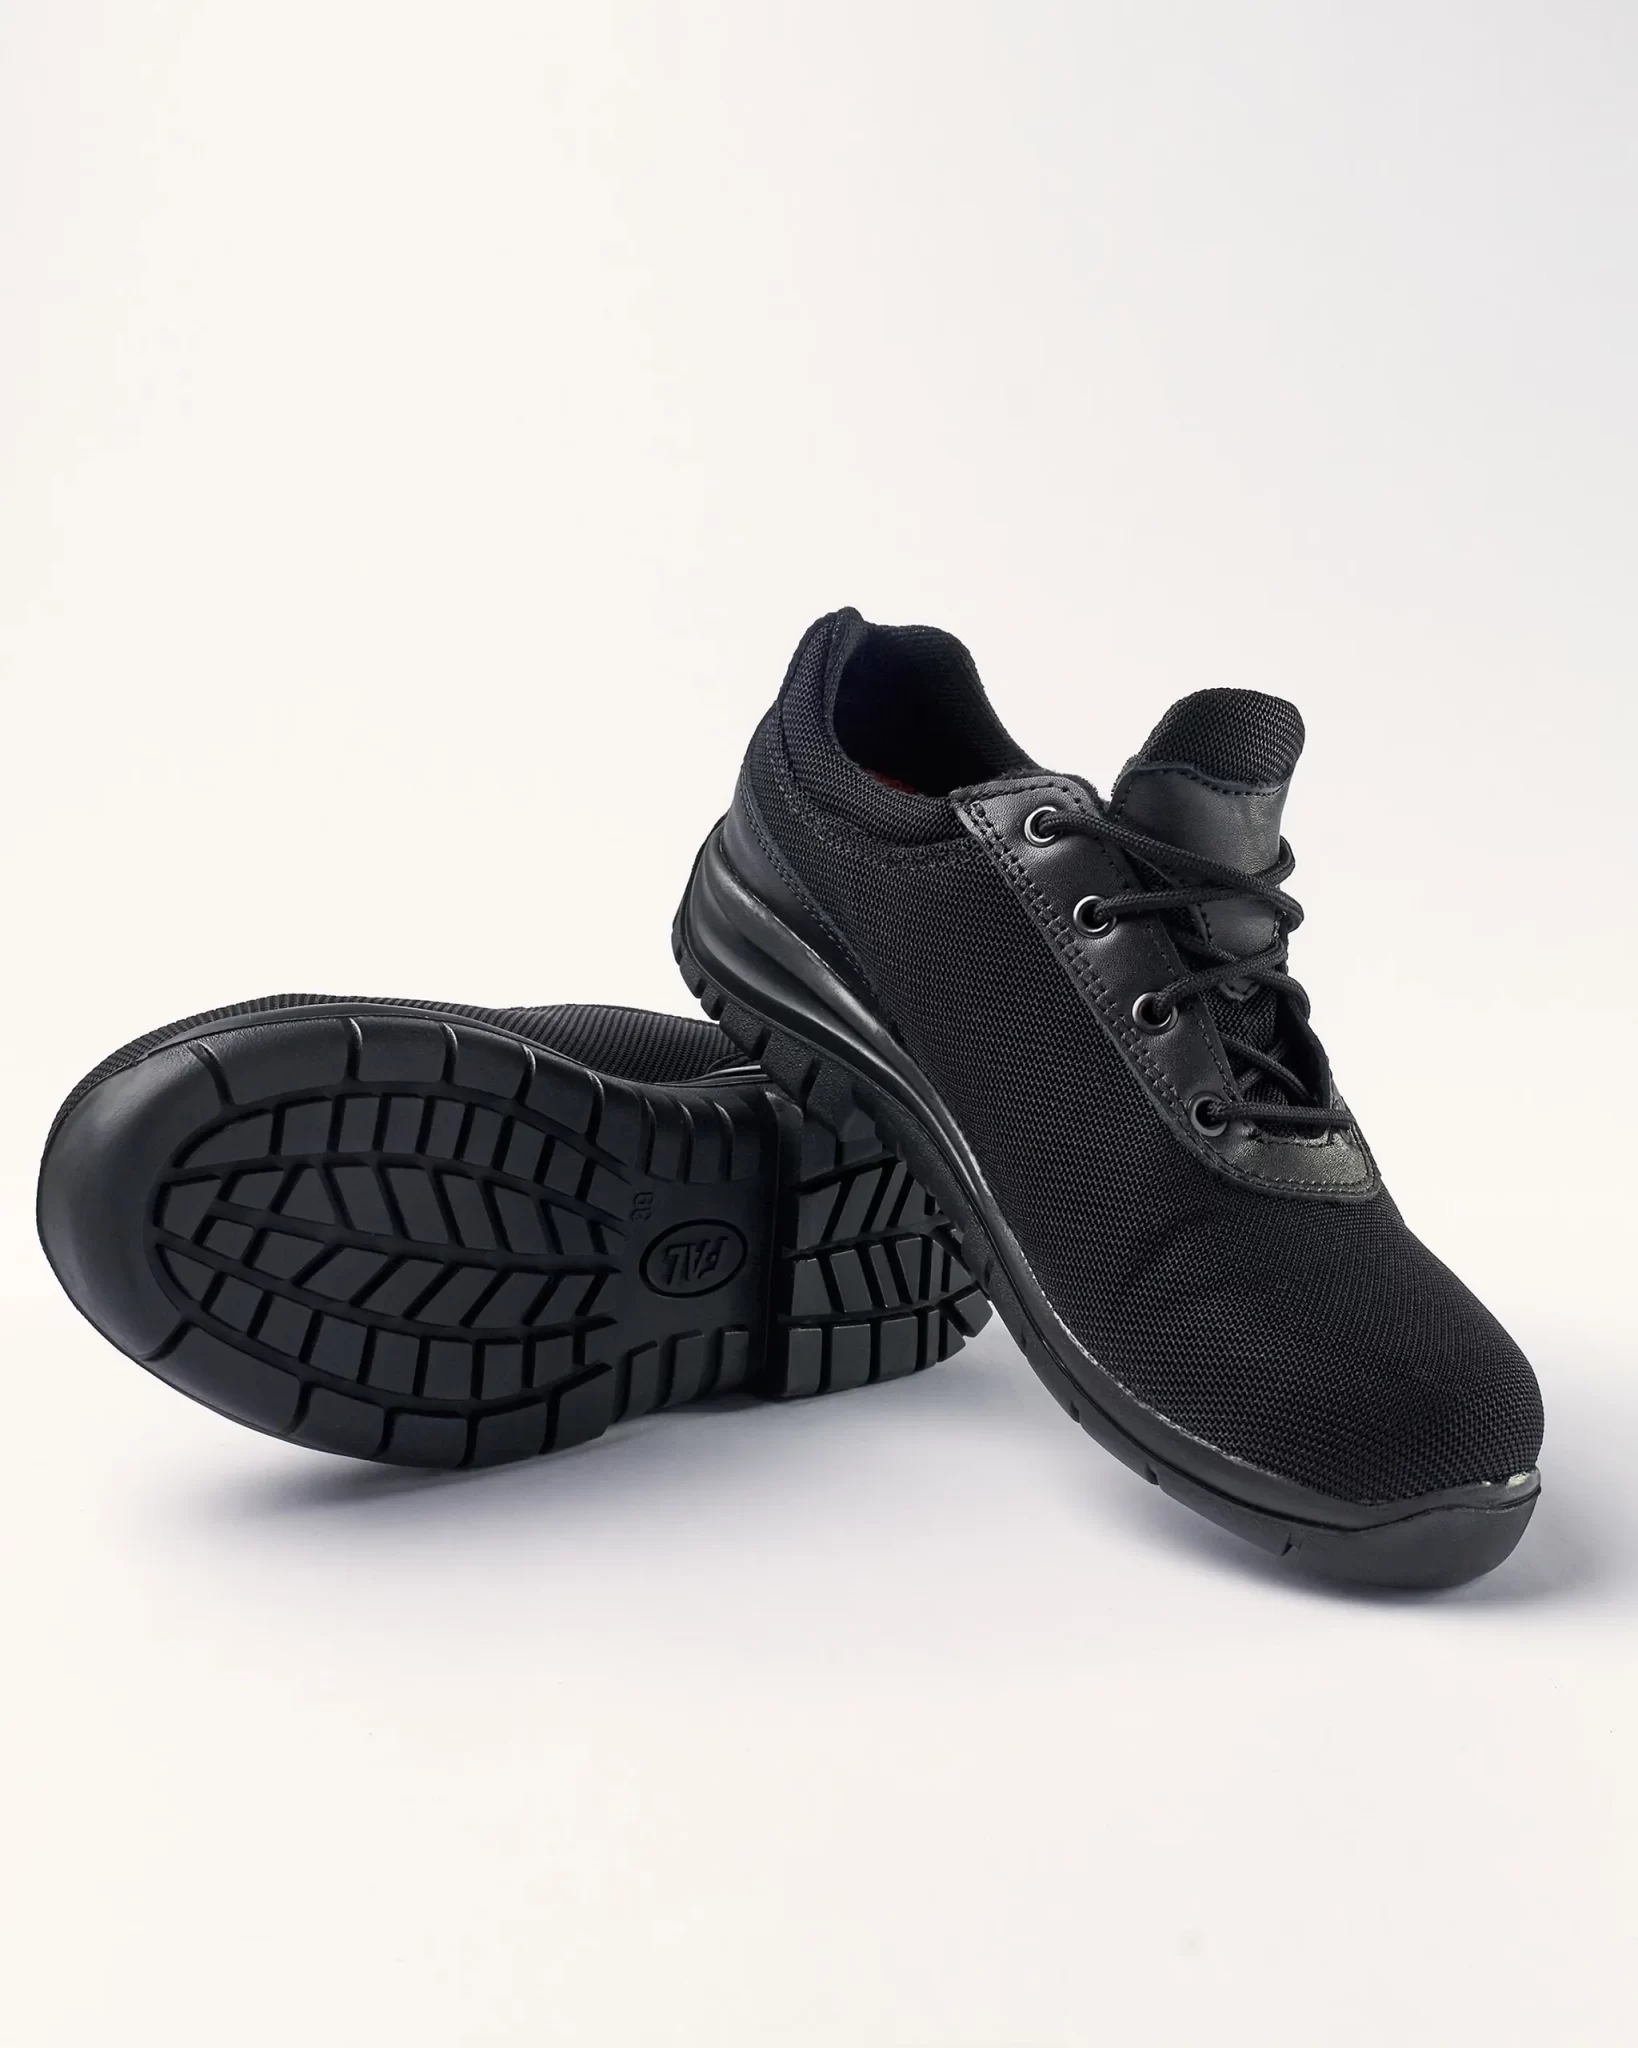 Zapatos EQUIPE-X3.3 con Forro interior dermodry coolmax alta transpiración, absorbente, poder secante